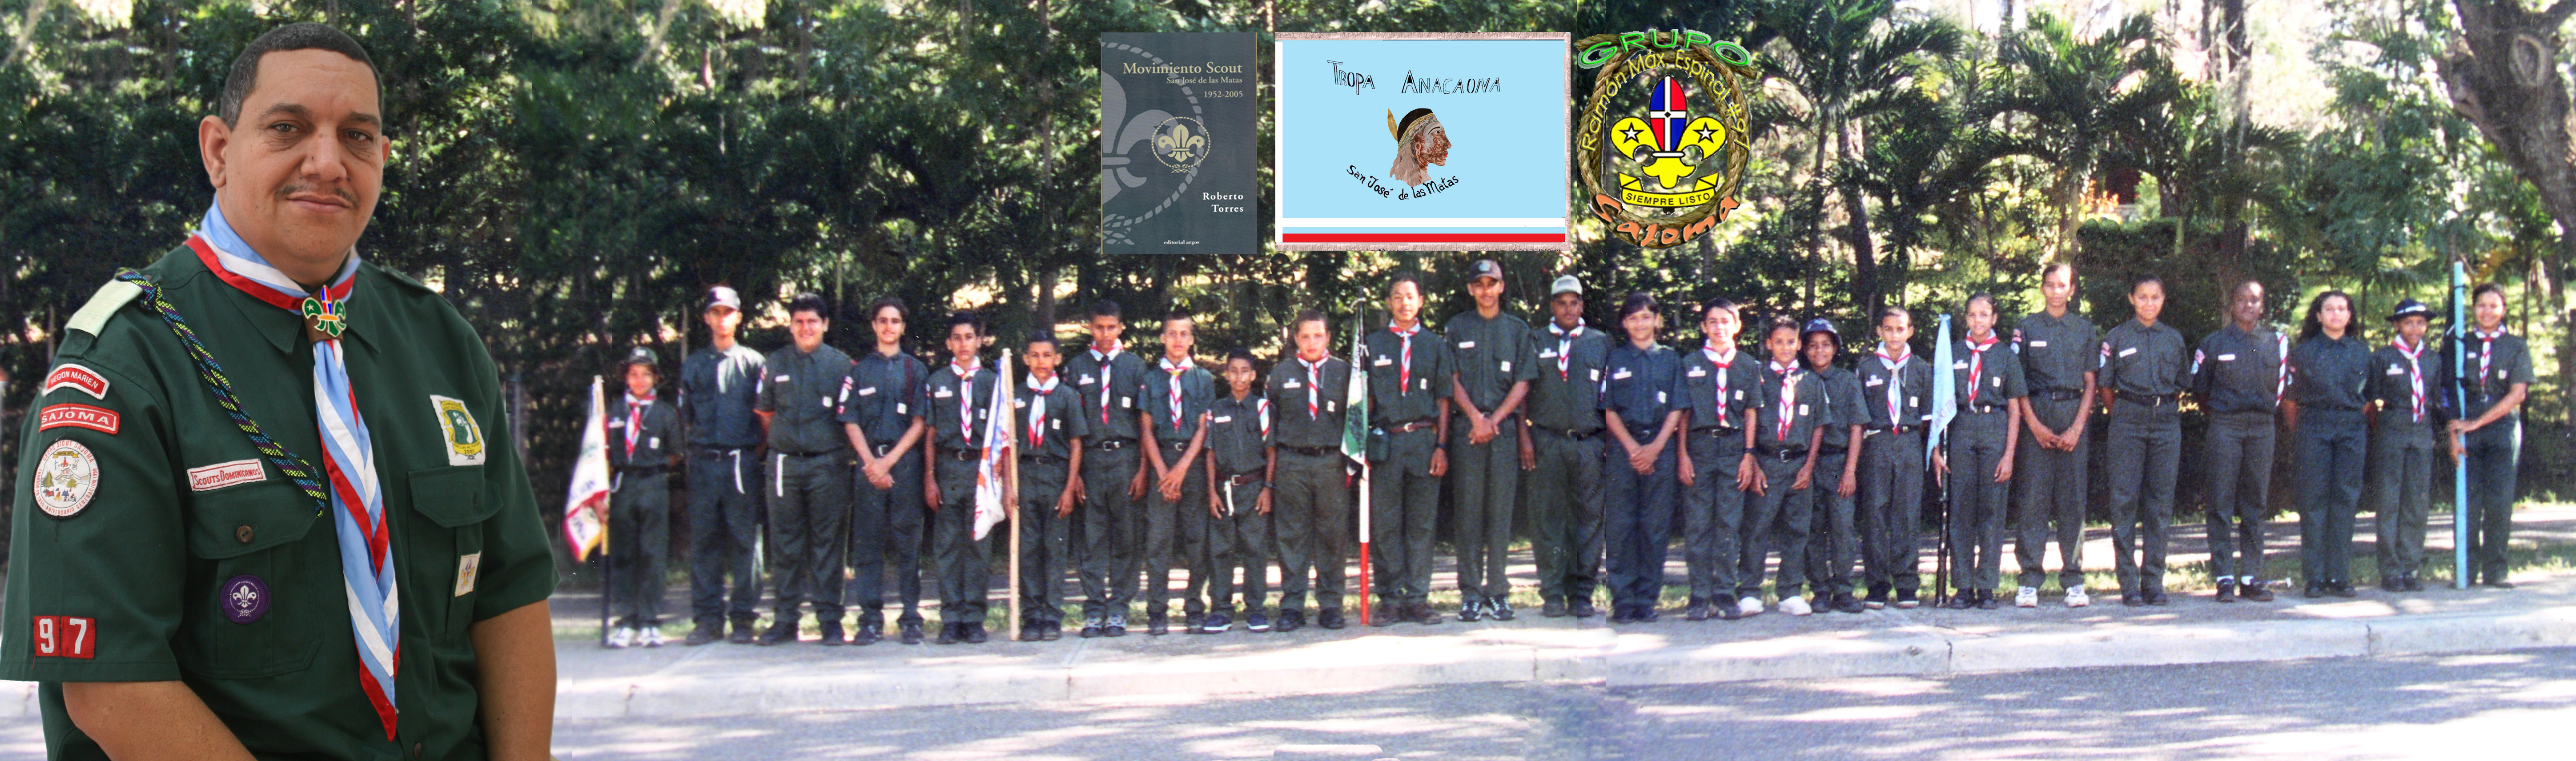 La Tropa Anacaona del grupo scout #97 en el 1998